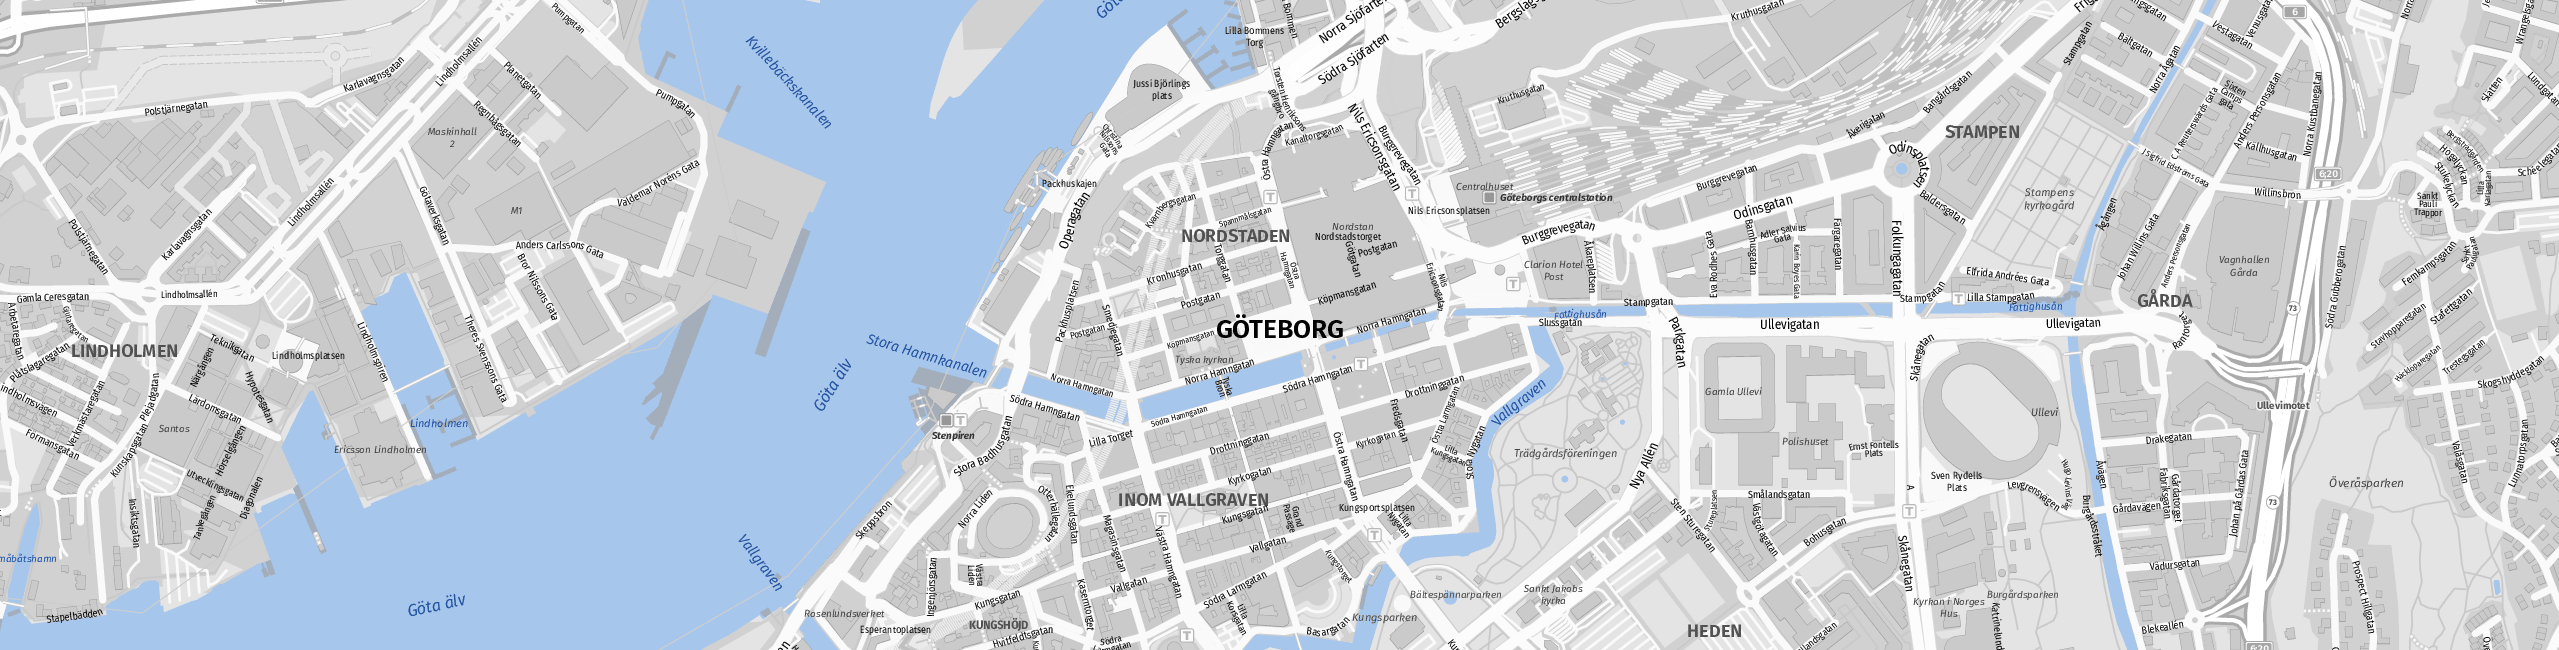 Stadtplan Gothenburg zum Downloaden.